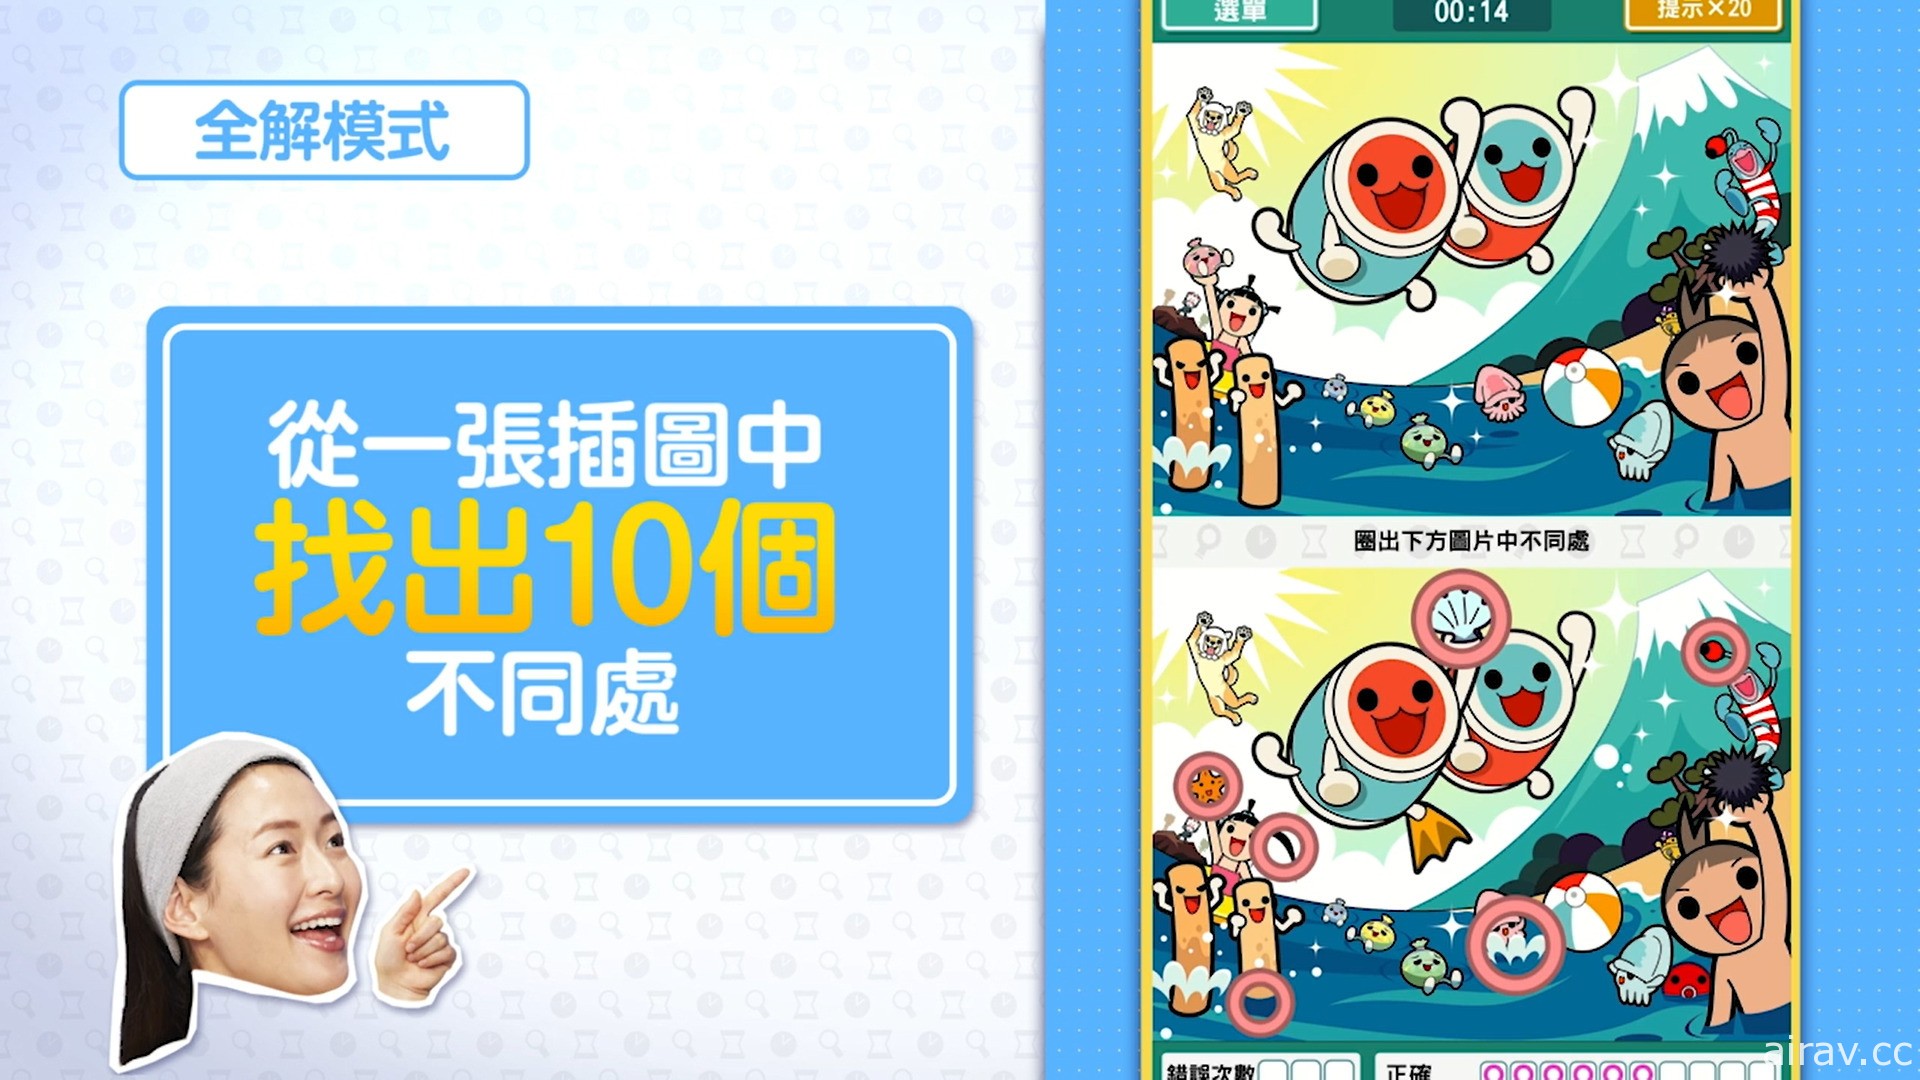 《-右腦達人- 找錯糾察隊 for Nintendo Switch》中文數位版 11 月 25 日發售